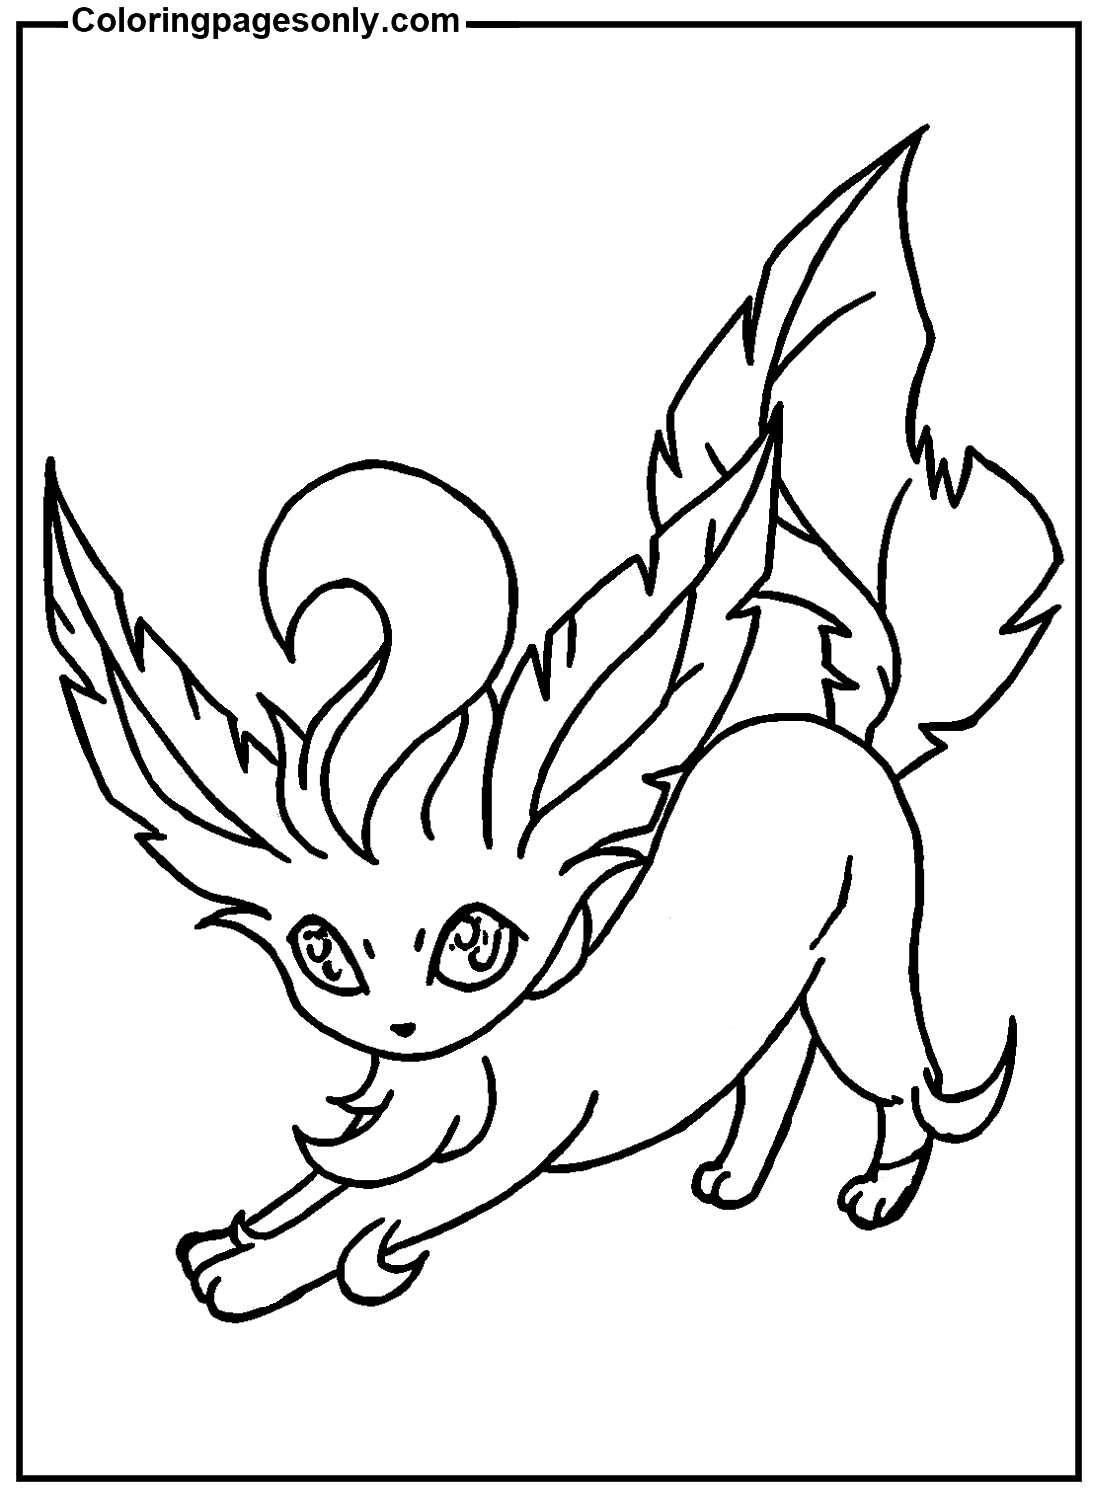 Pokémon Leafeon Image de Leafeon